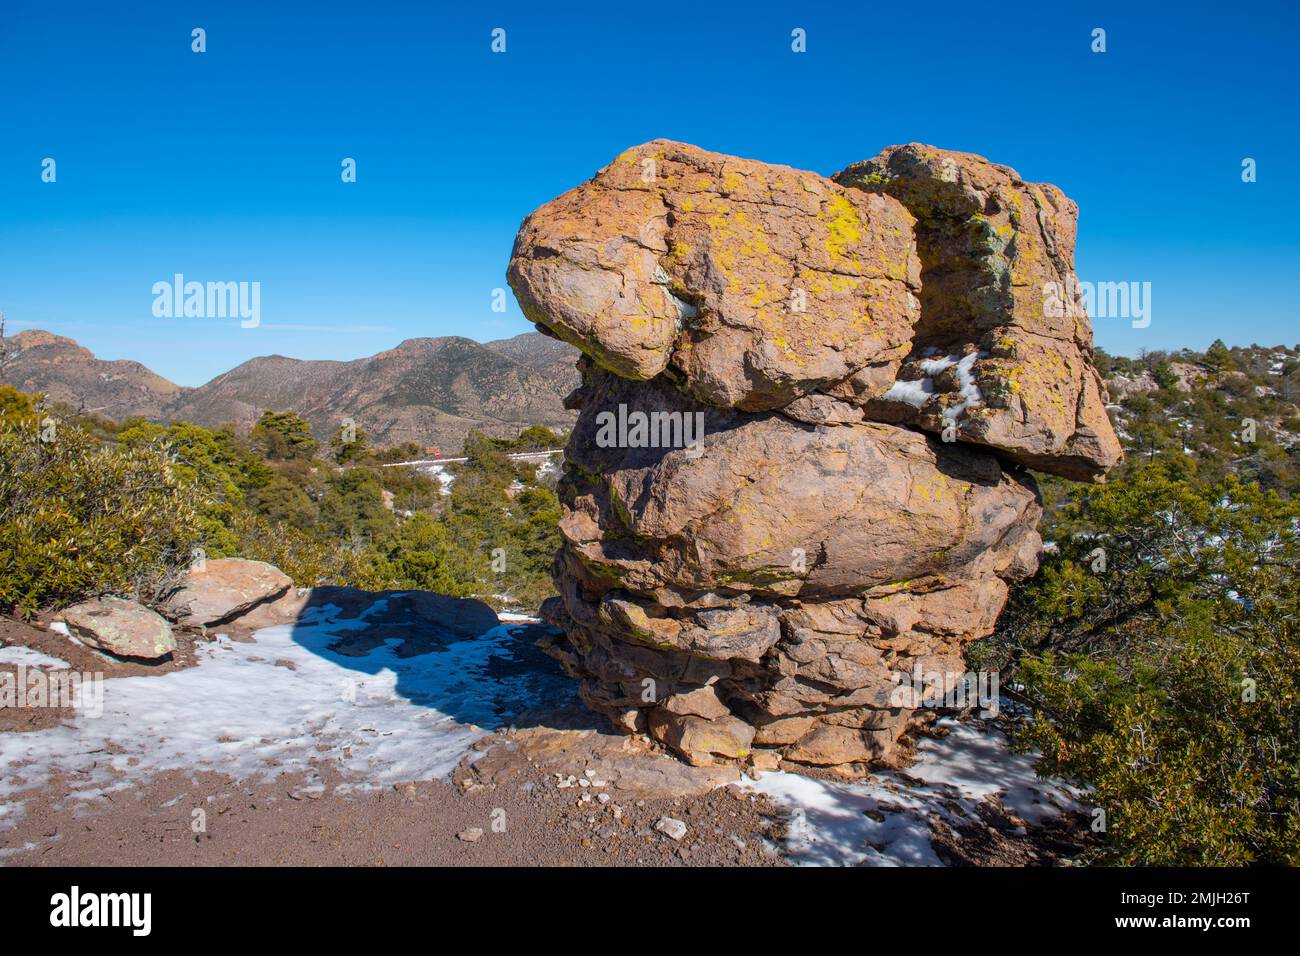 Colonnes de pierre alias Hoodoos à Massai point dans Chiricahua National Monument dans le comté de Cochise dans Arizona AZ, Etats-Unis. Banque D'Images